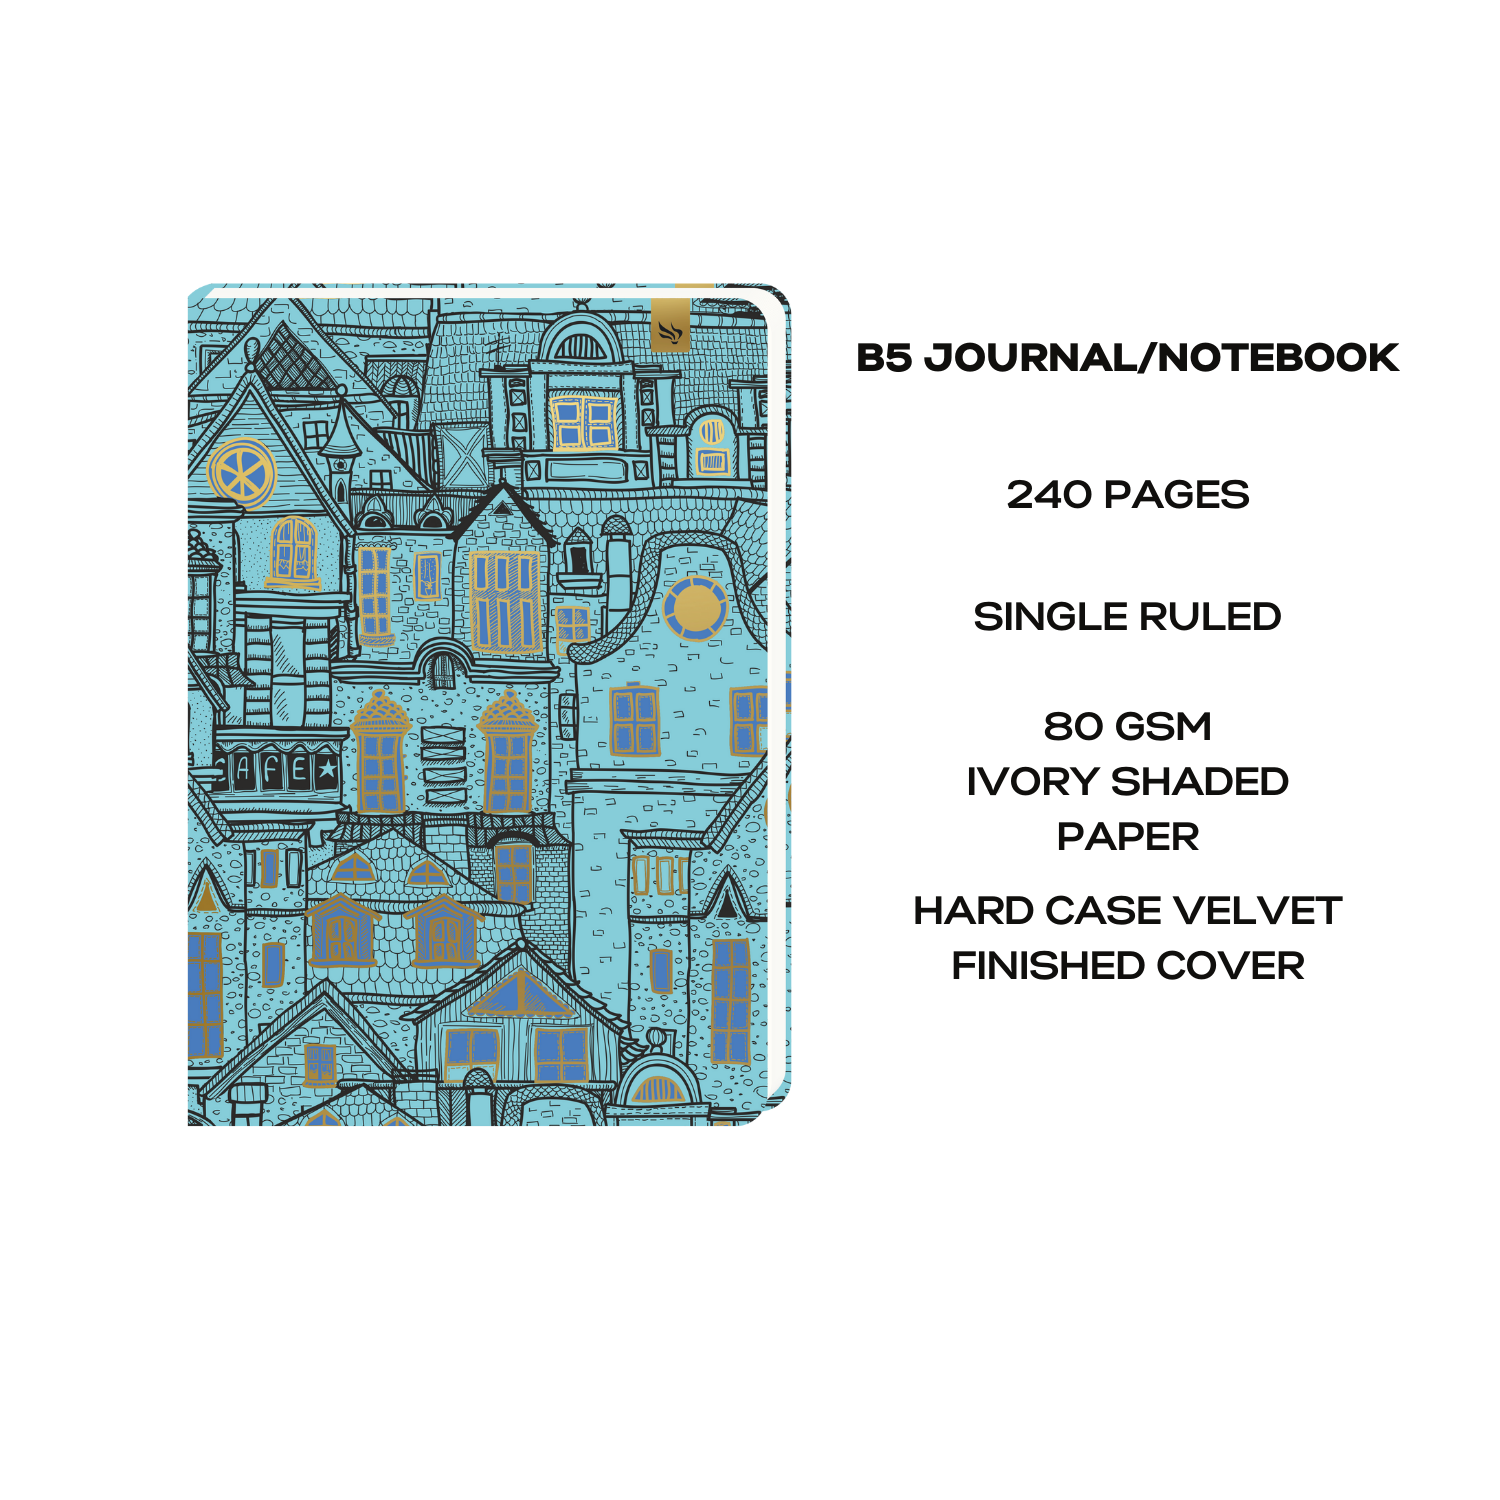 b5 journal notebook